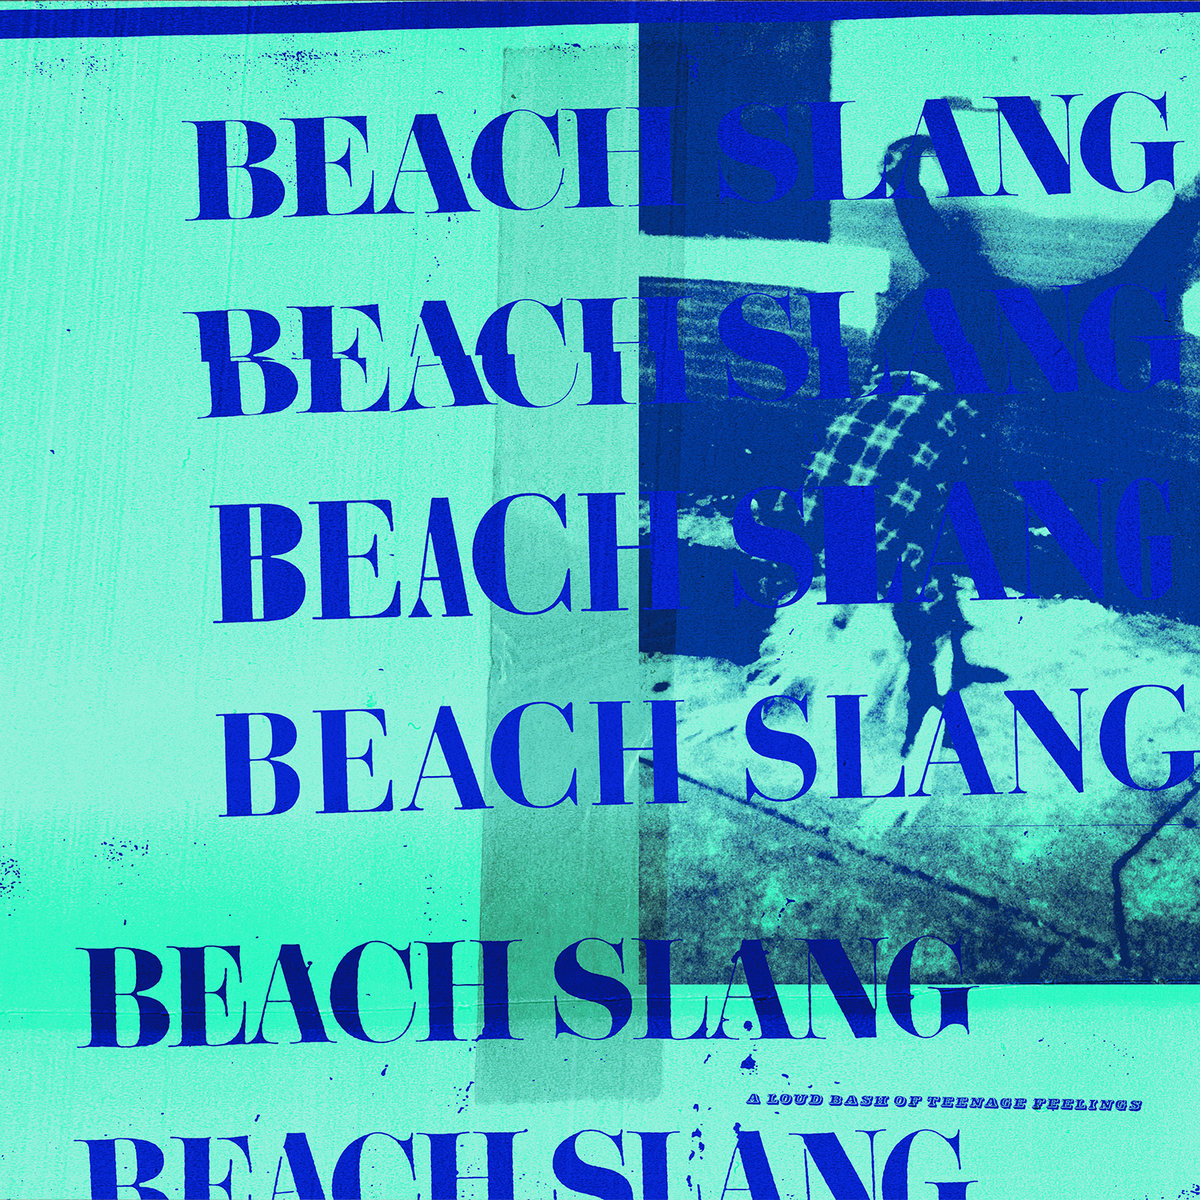 Beach Slang: “Please Stop Robbing Us”